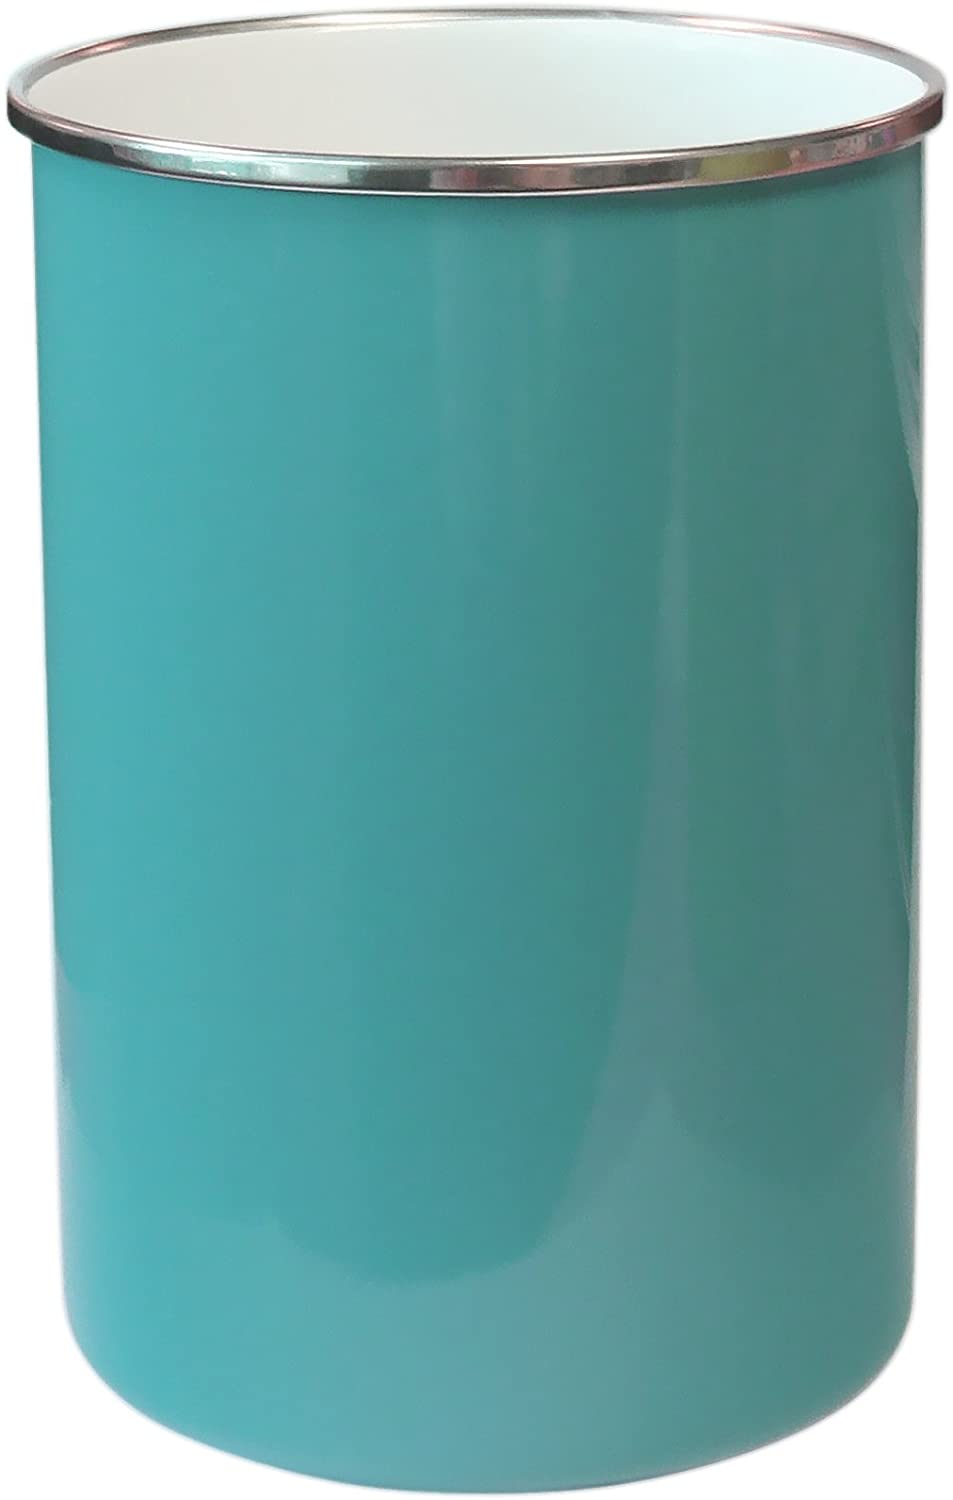 turquoise utensil holder